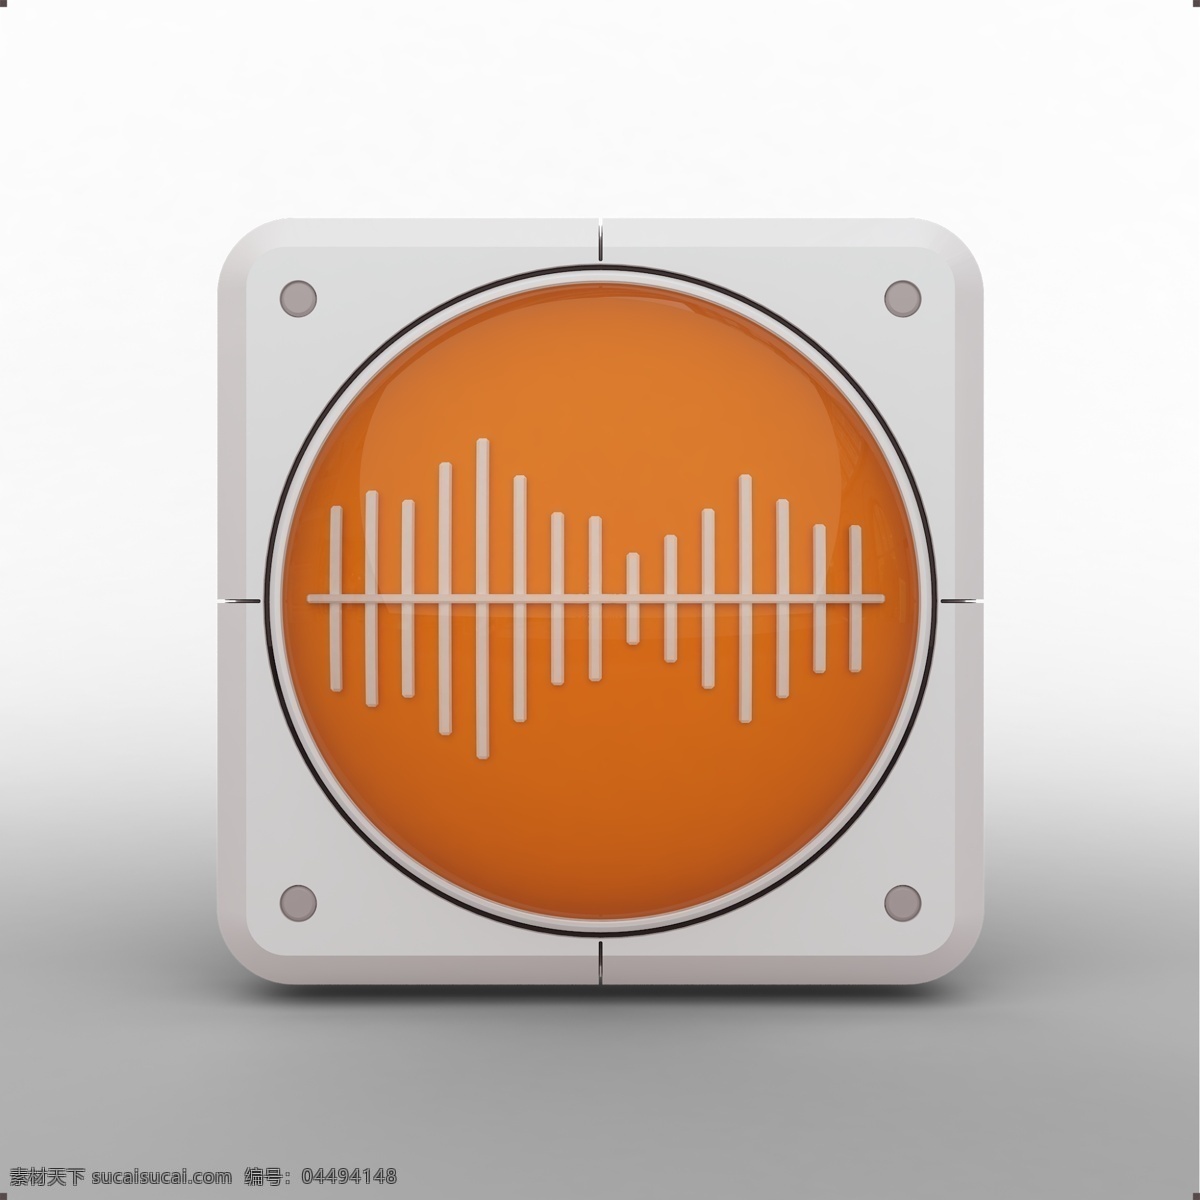 三维 立体 录音 icon 音频 波段 频段 录音器 录音功能 立体图标 三维图标 系列图标 系统应用 应用图标 app图标 logo 手机应用